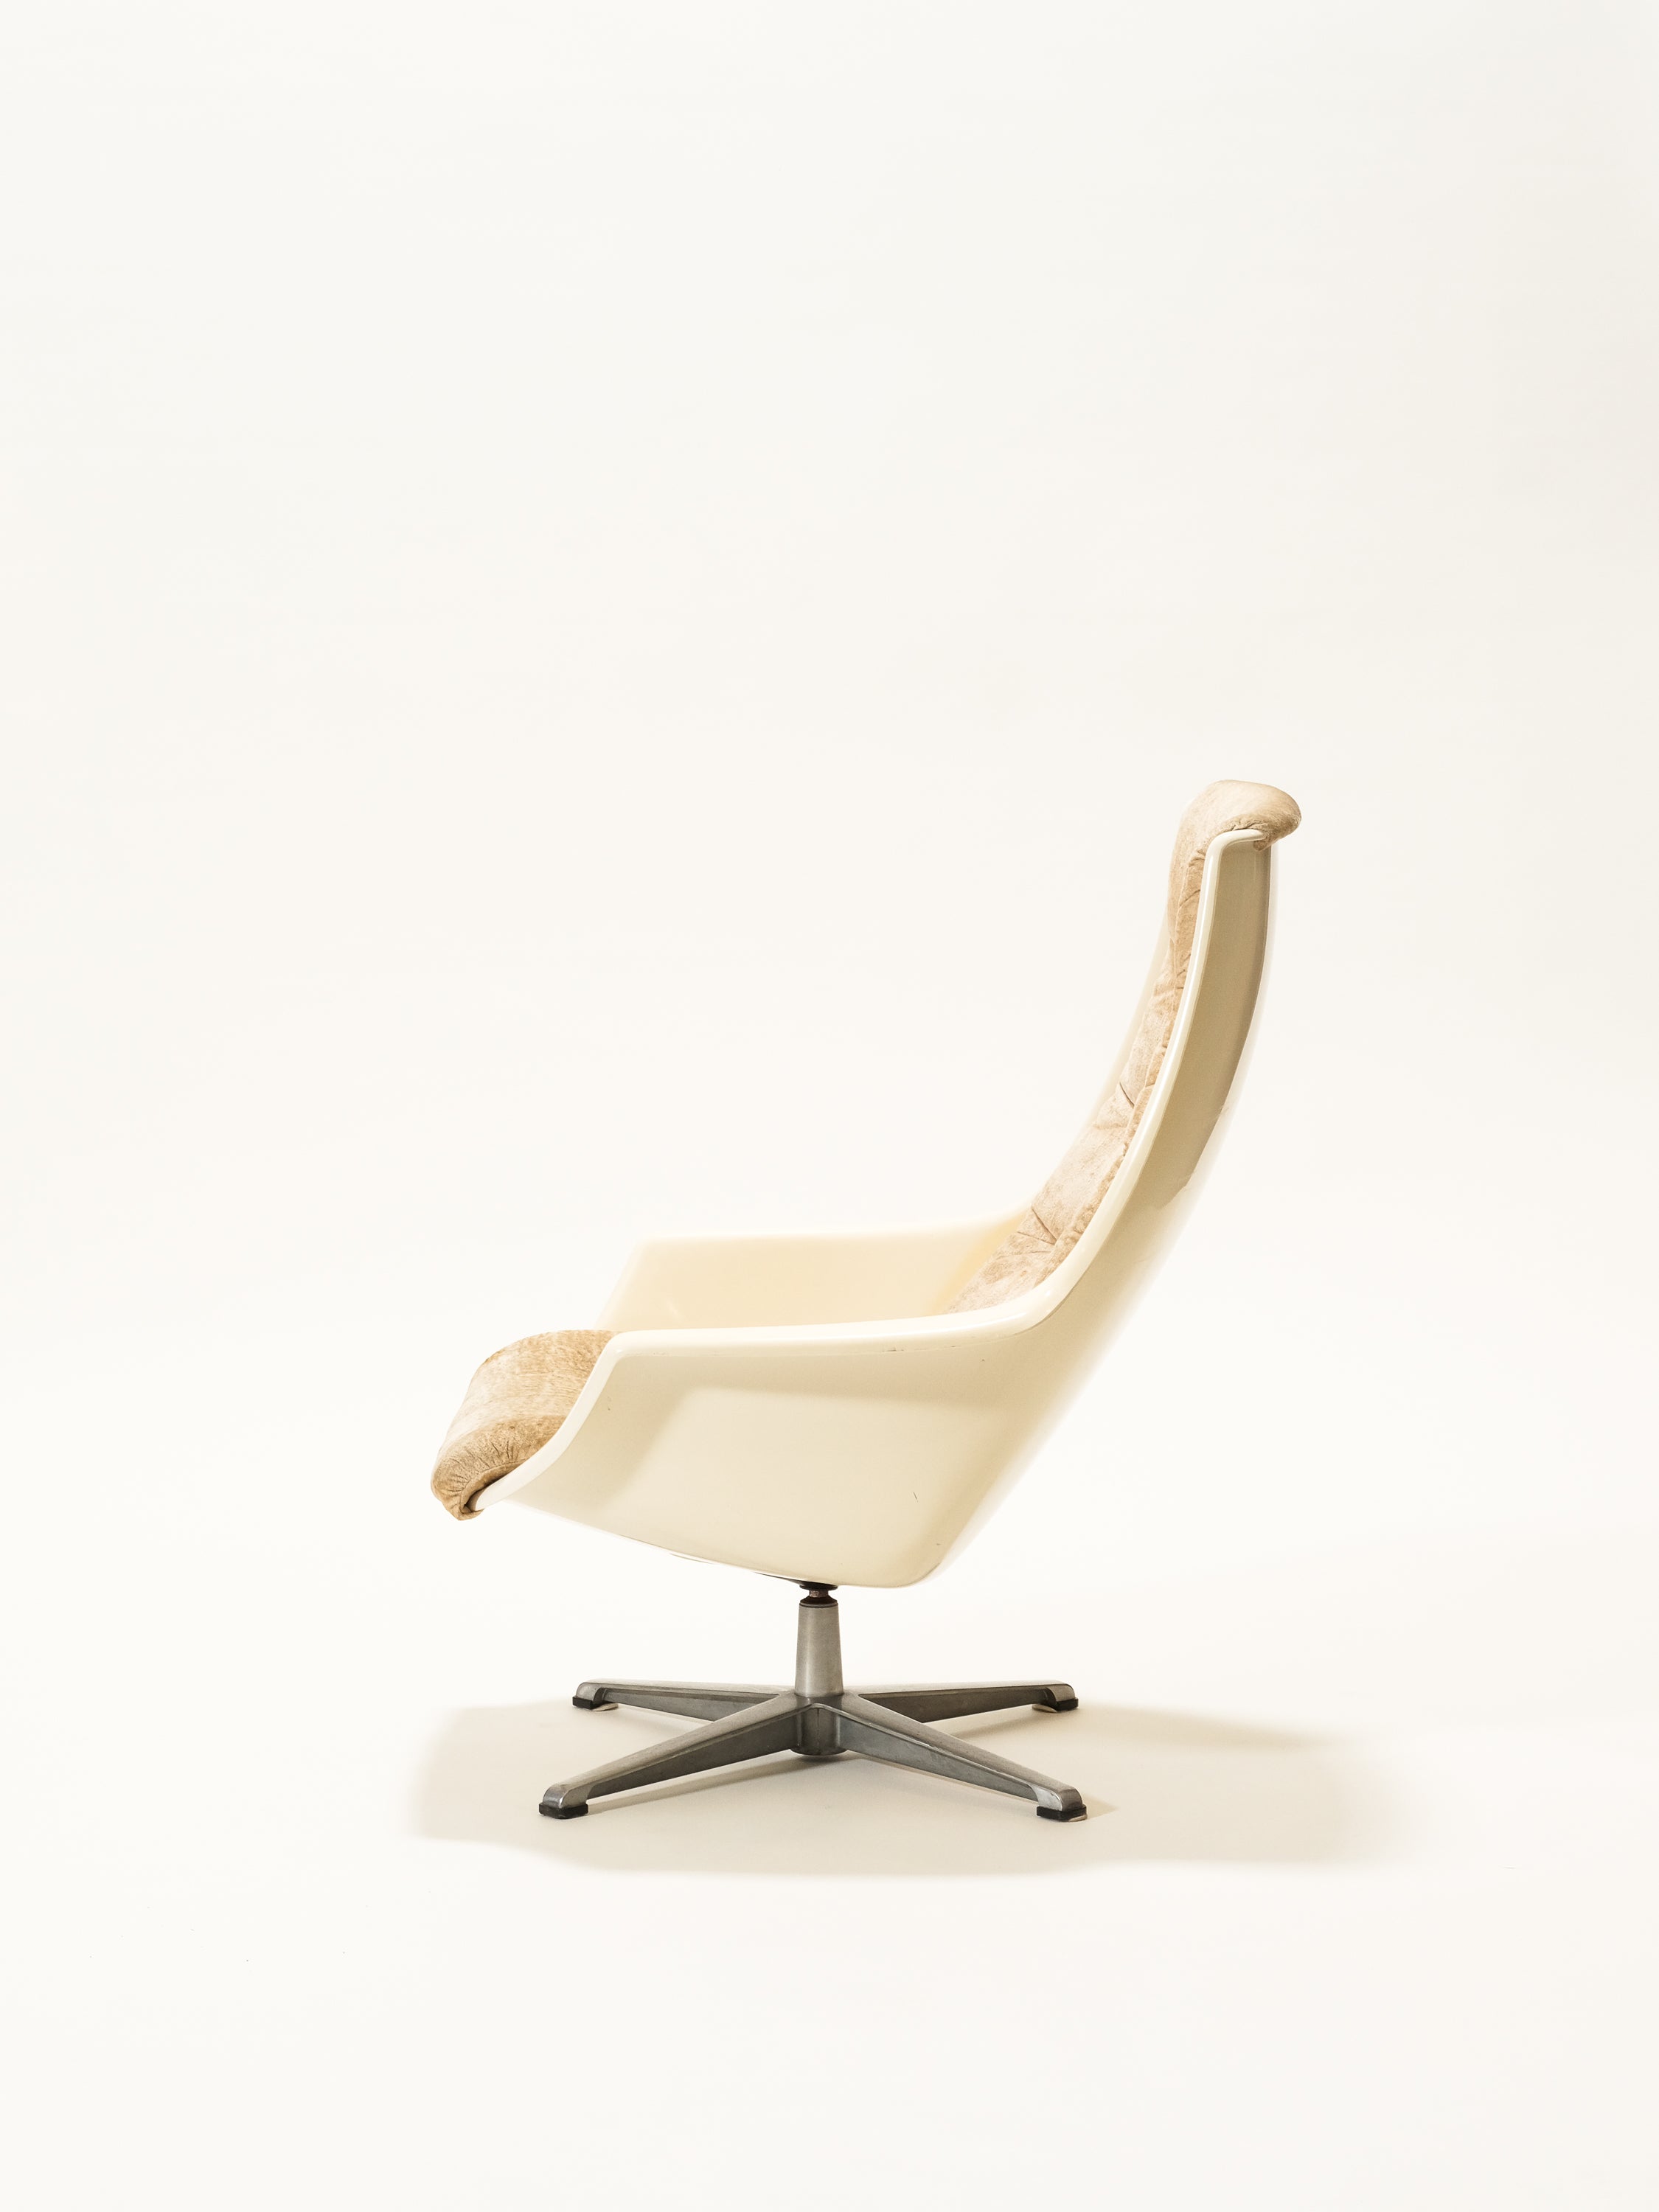 Swivel Lounge Chair Model "Planet" by Ikea, 1973